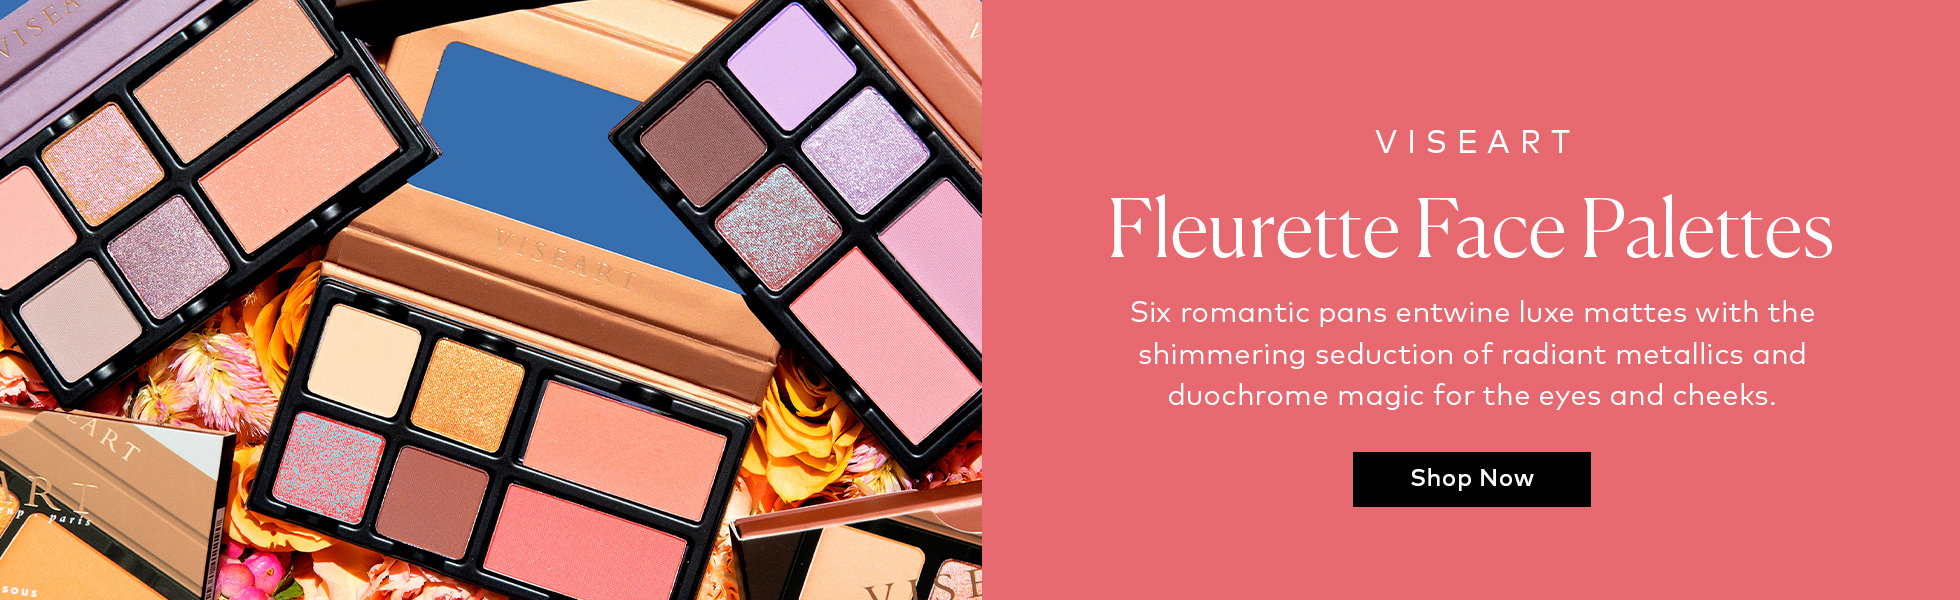 Shop the Viseart Fleurett Face Palettes on Beautylish.com!